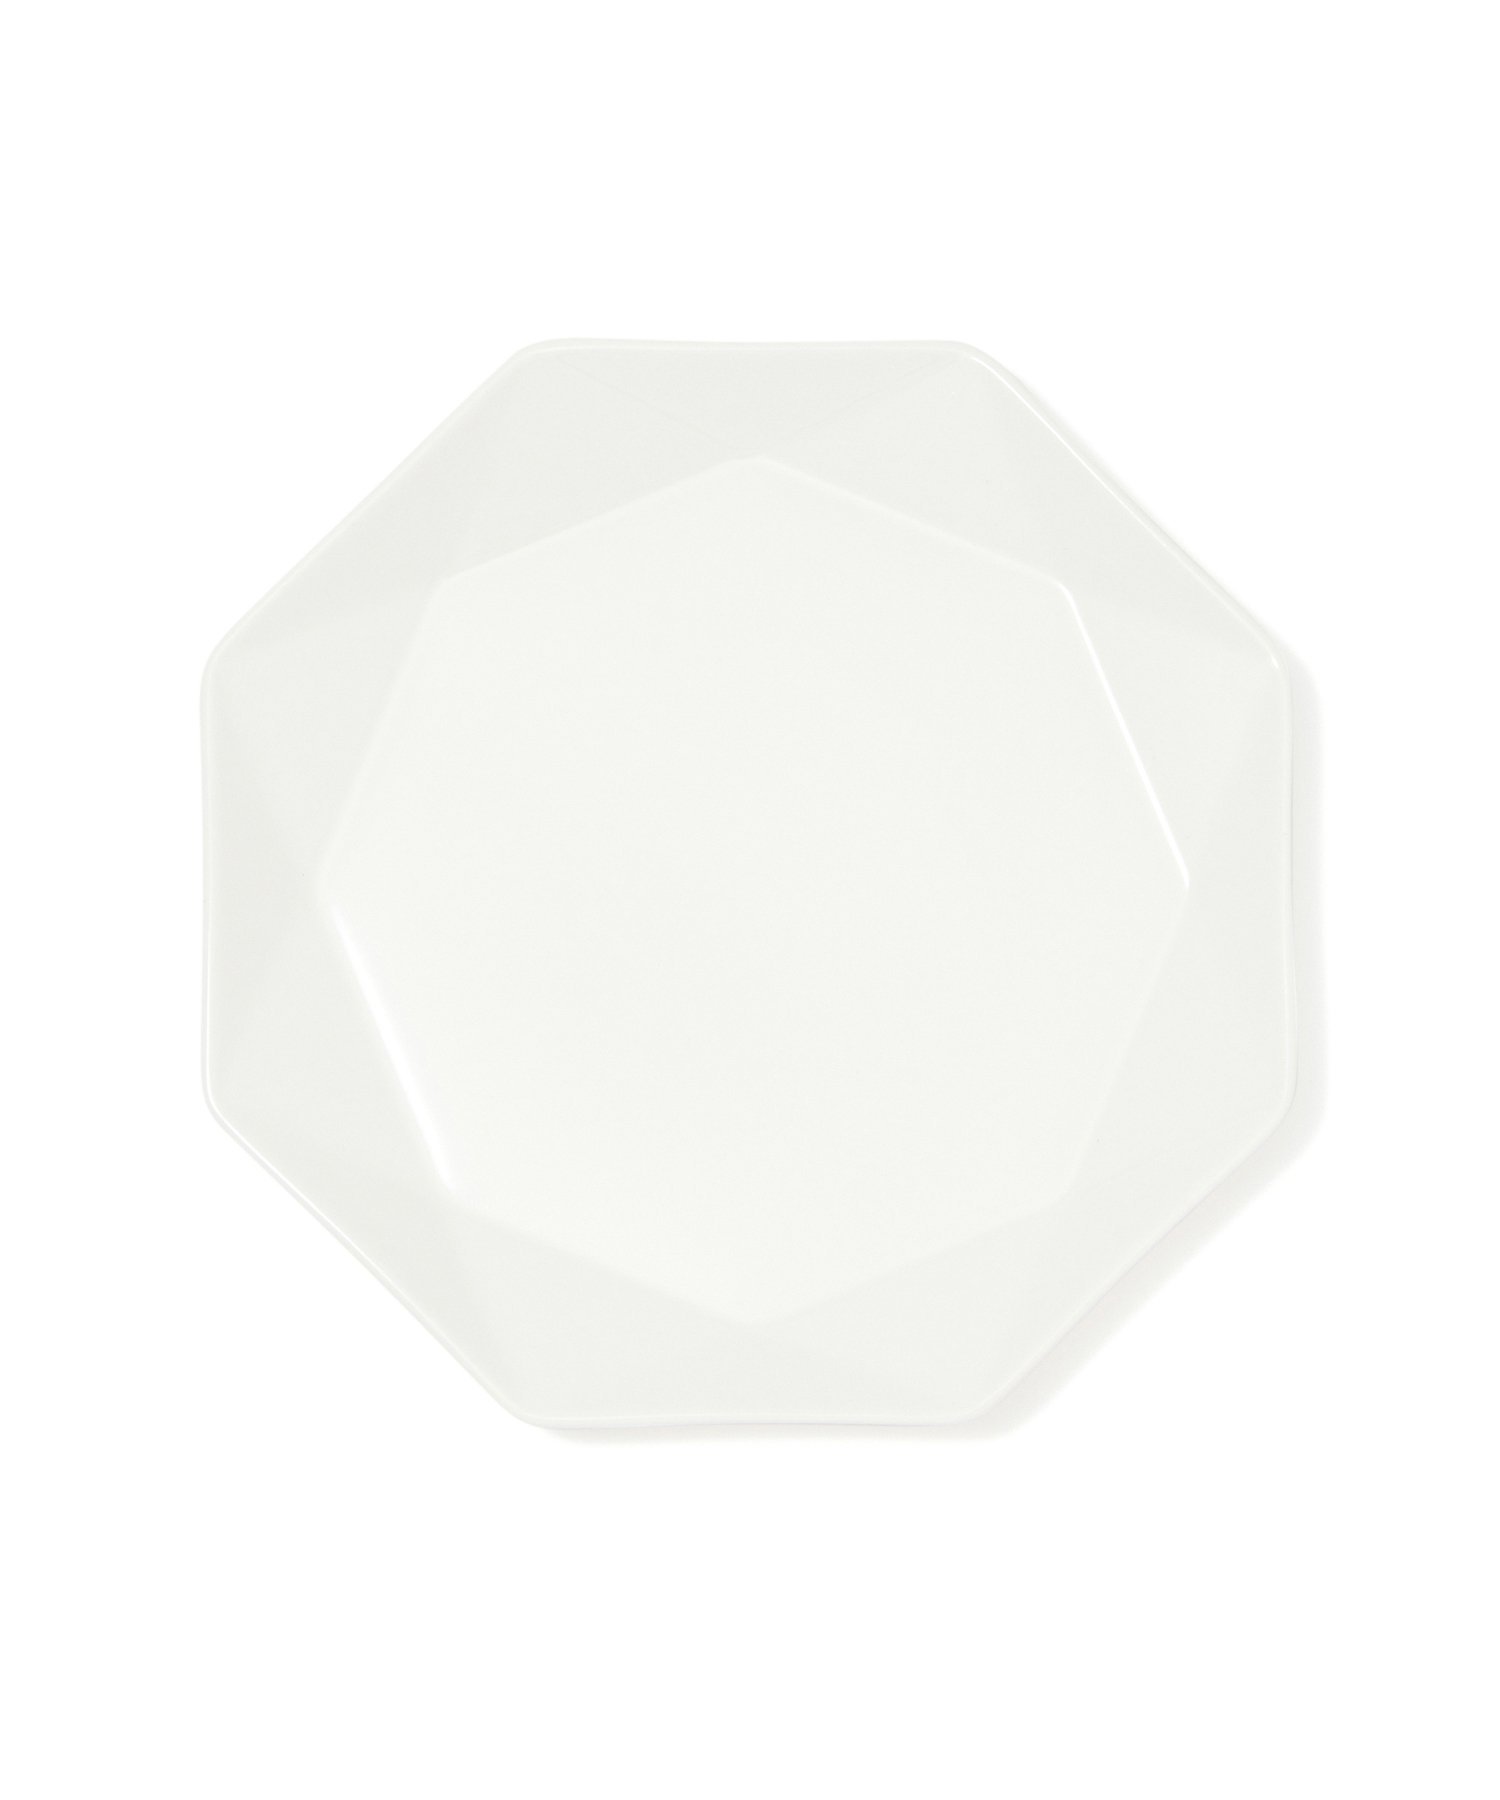 Francfranc（フランフラン）ブランシェ プレート S オクタゴン定番人気の白食器ブランシェシリーズのプレートです。シーンを選ばず使えて、どんなお料理にも合わせやすいシンプルなデザインが魅力。特徴的なリムの形状がシンプルな中にも洗練さ...